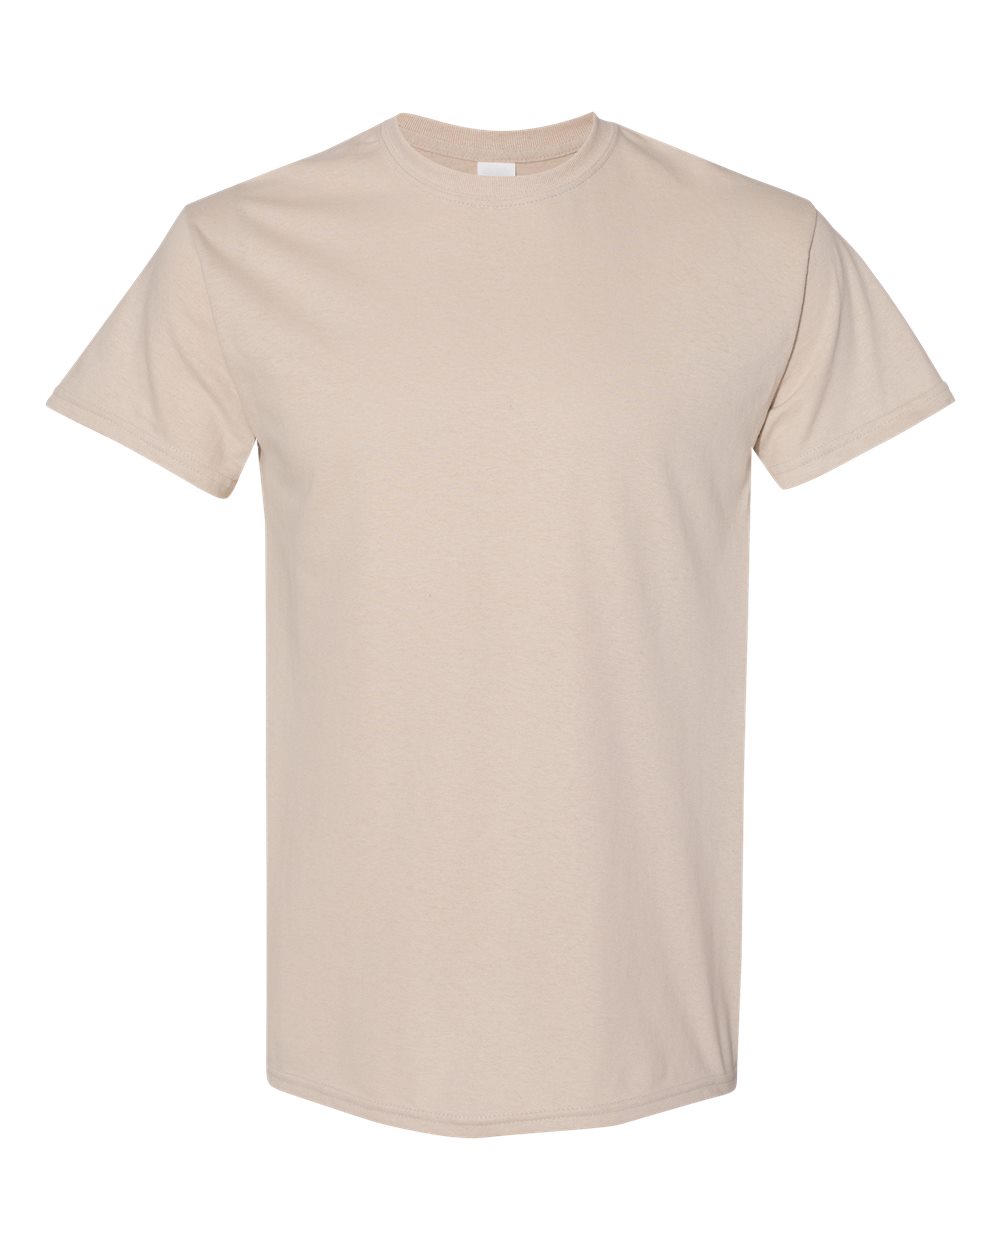 Seltzer Slut Adult Unisex Cotton T-Shirt - 10